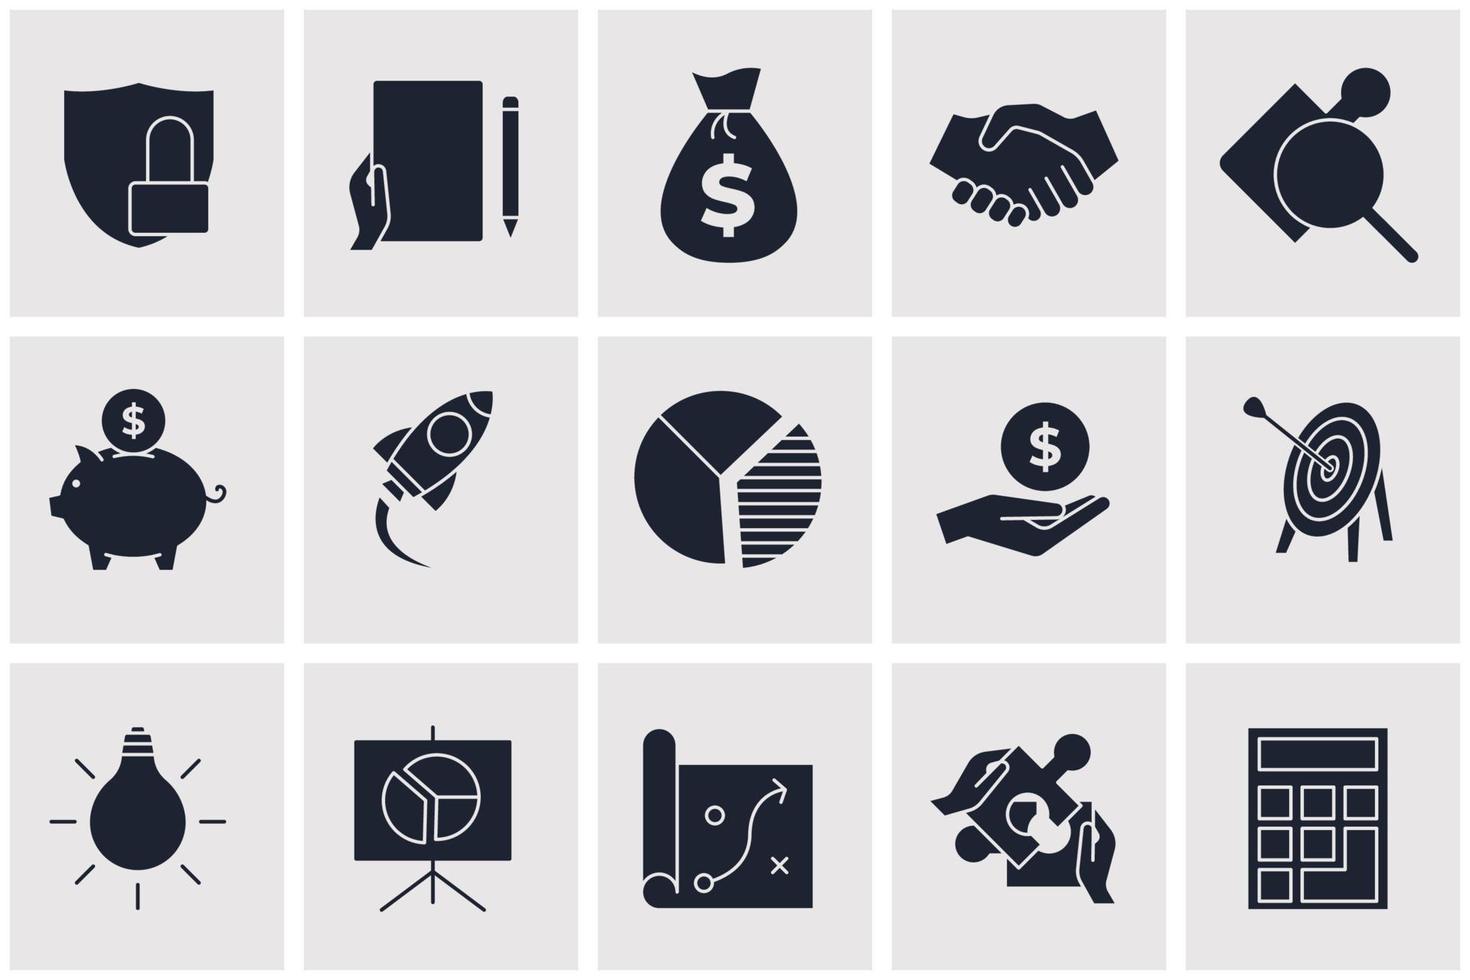 zakelijke en financiële elementen instellen pictogram symbool sjabloon voor grafische en webdesign collectie logo vectorillustratie vector